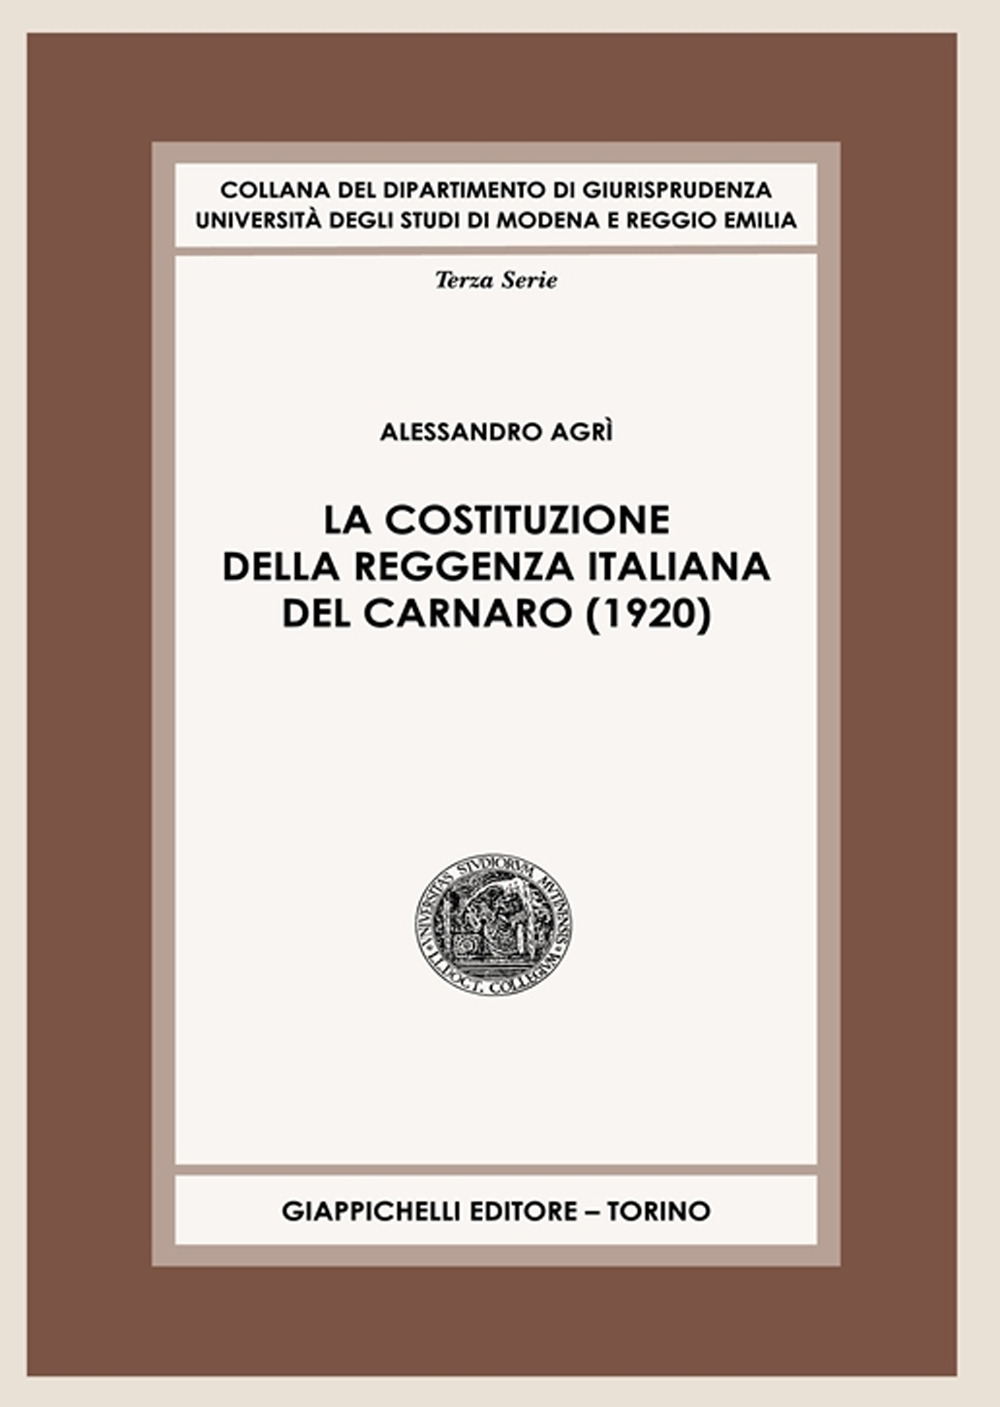 La Costituzione della Reggenza italiana del Carnaro (1920)